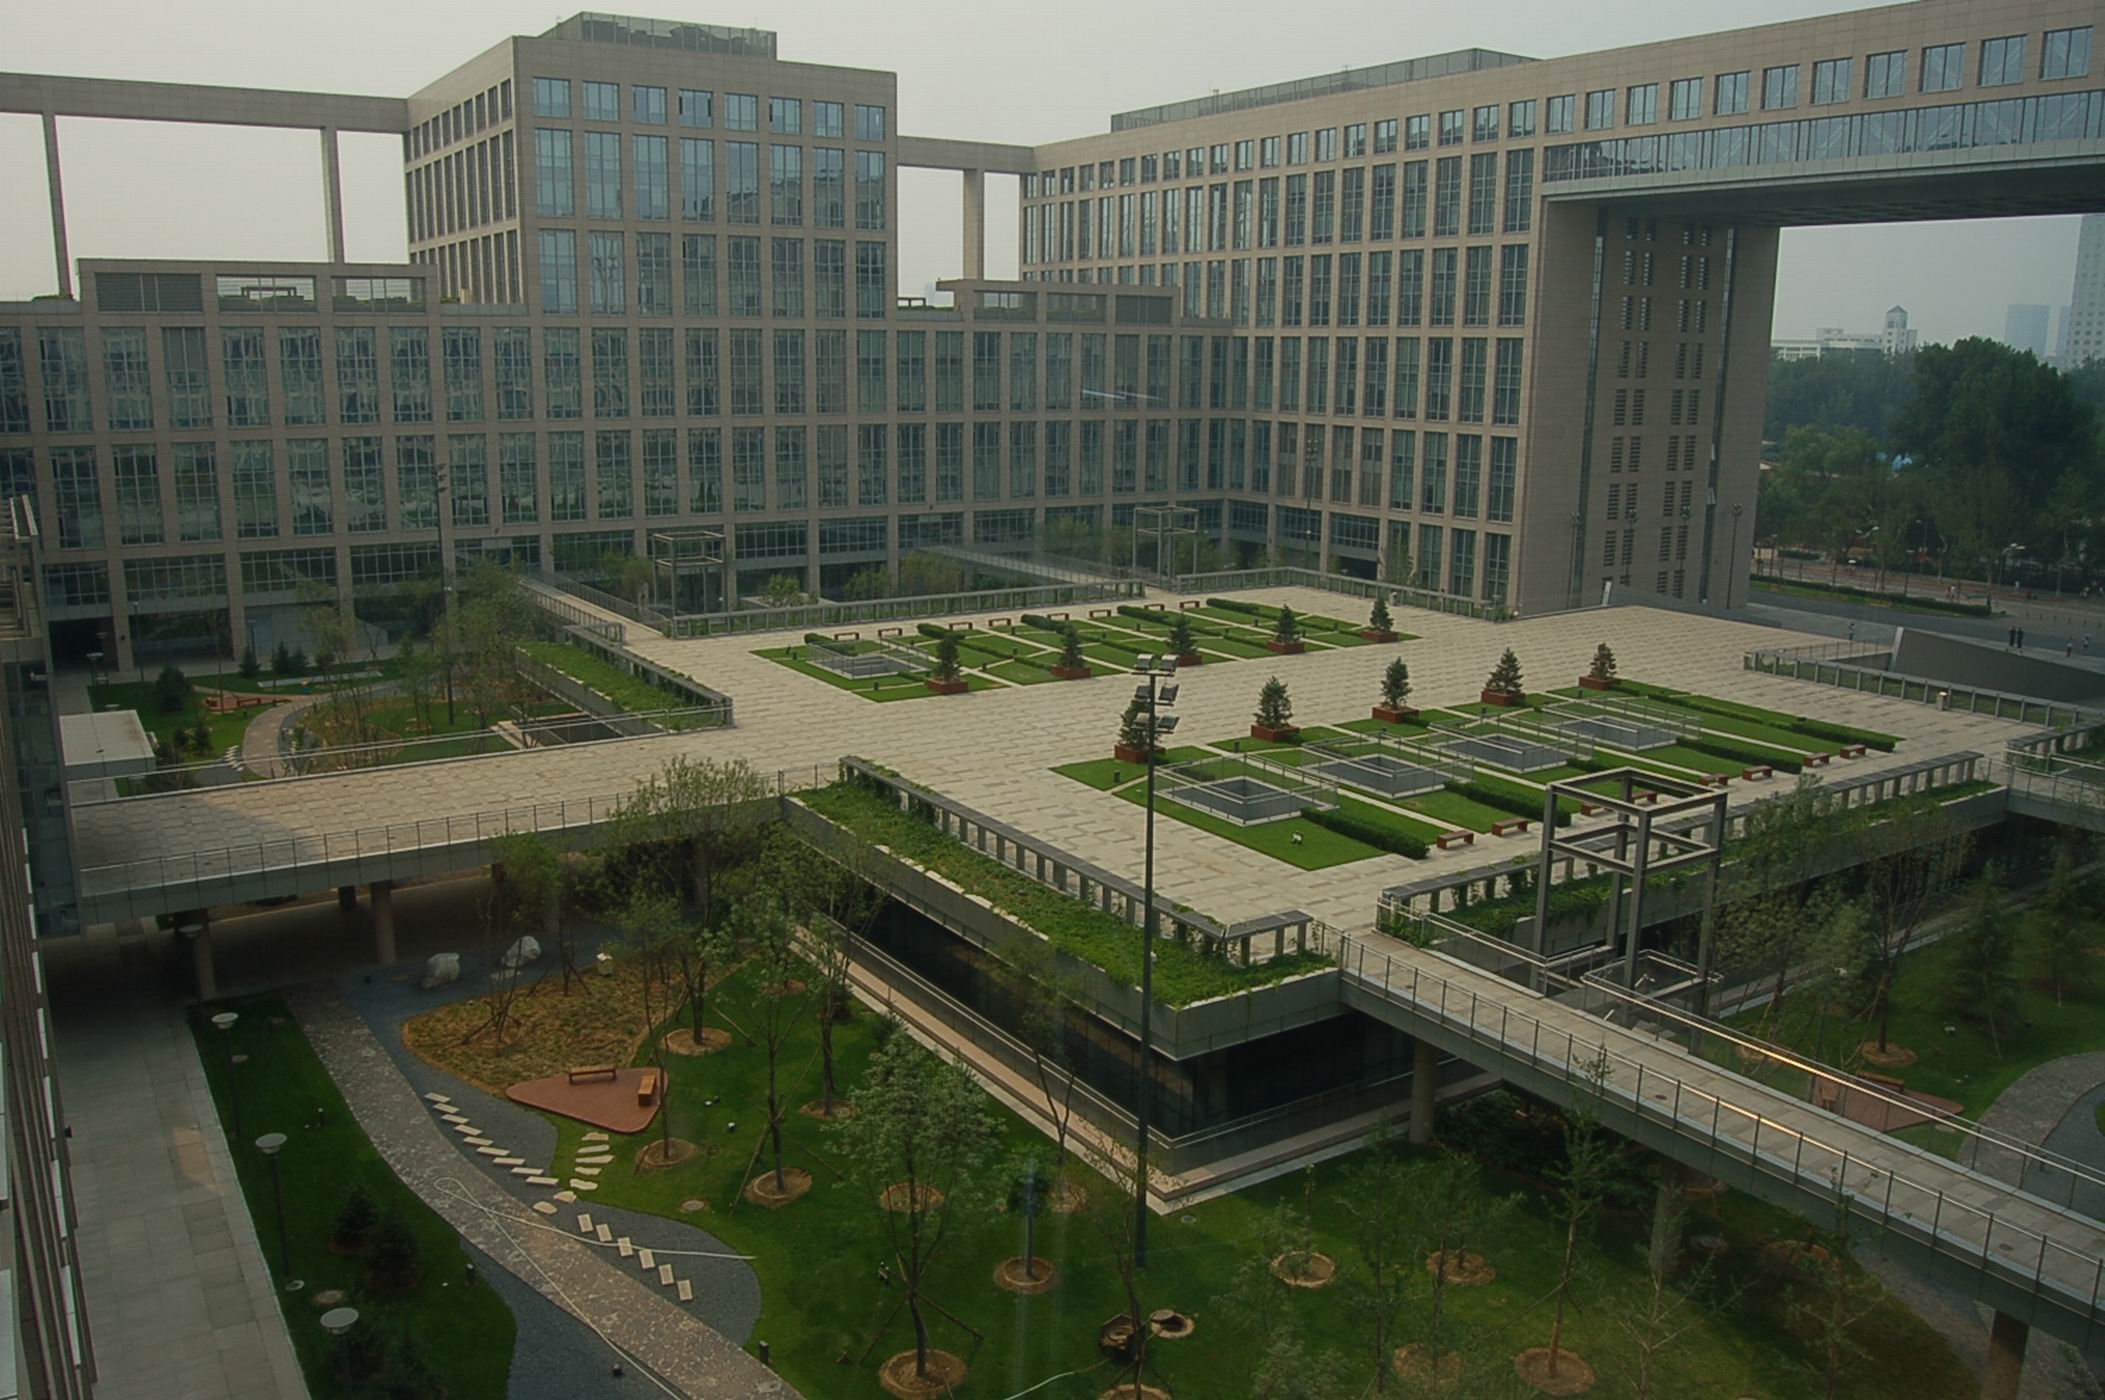 校园风景一般,校内建筑绝对一流,你见识过北京航空航天大学吗?